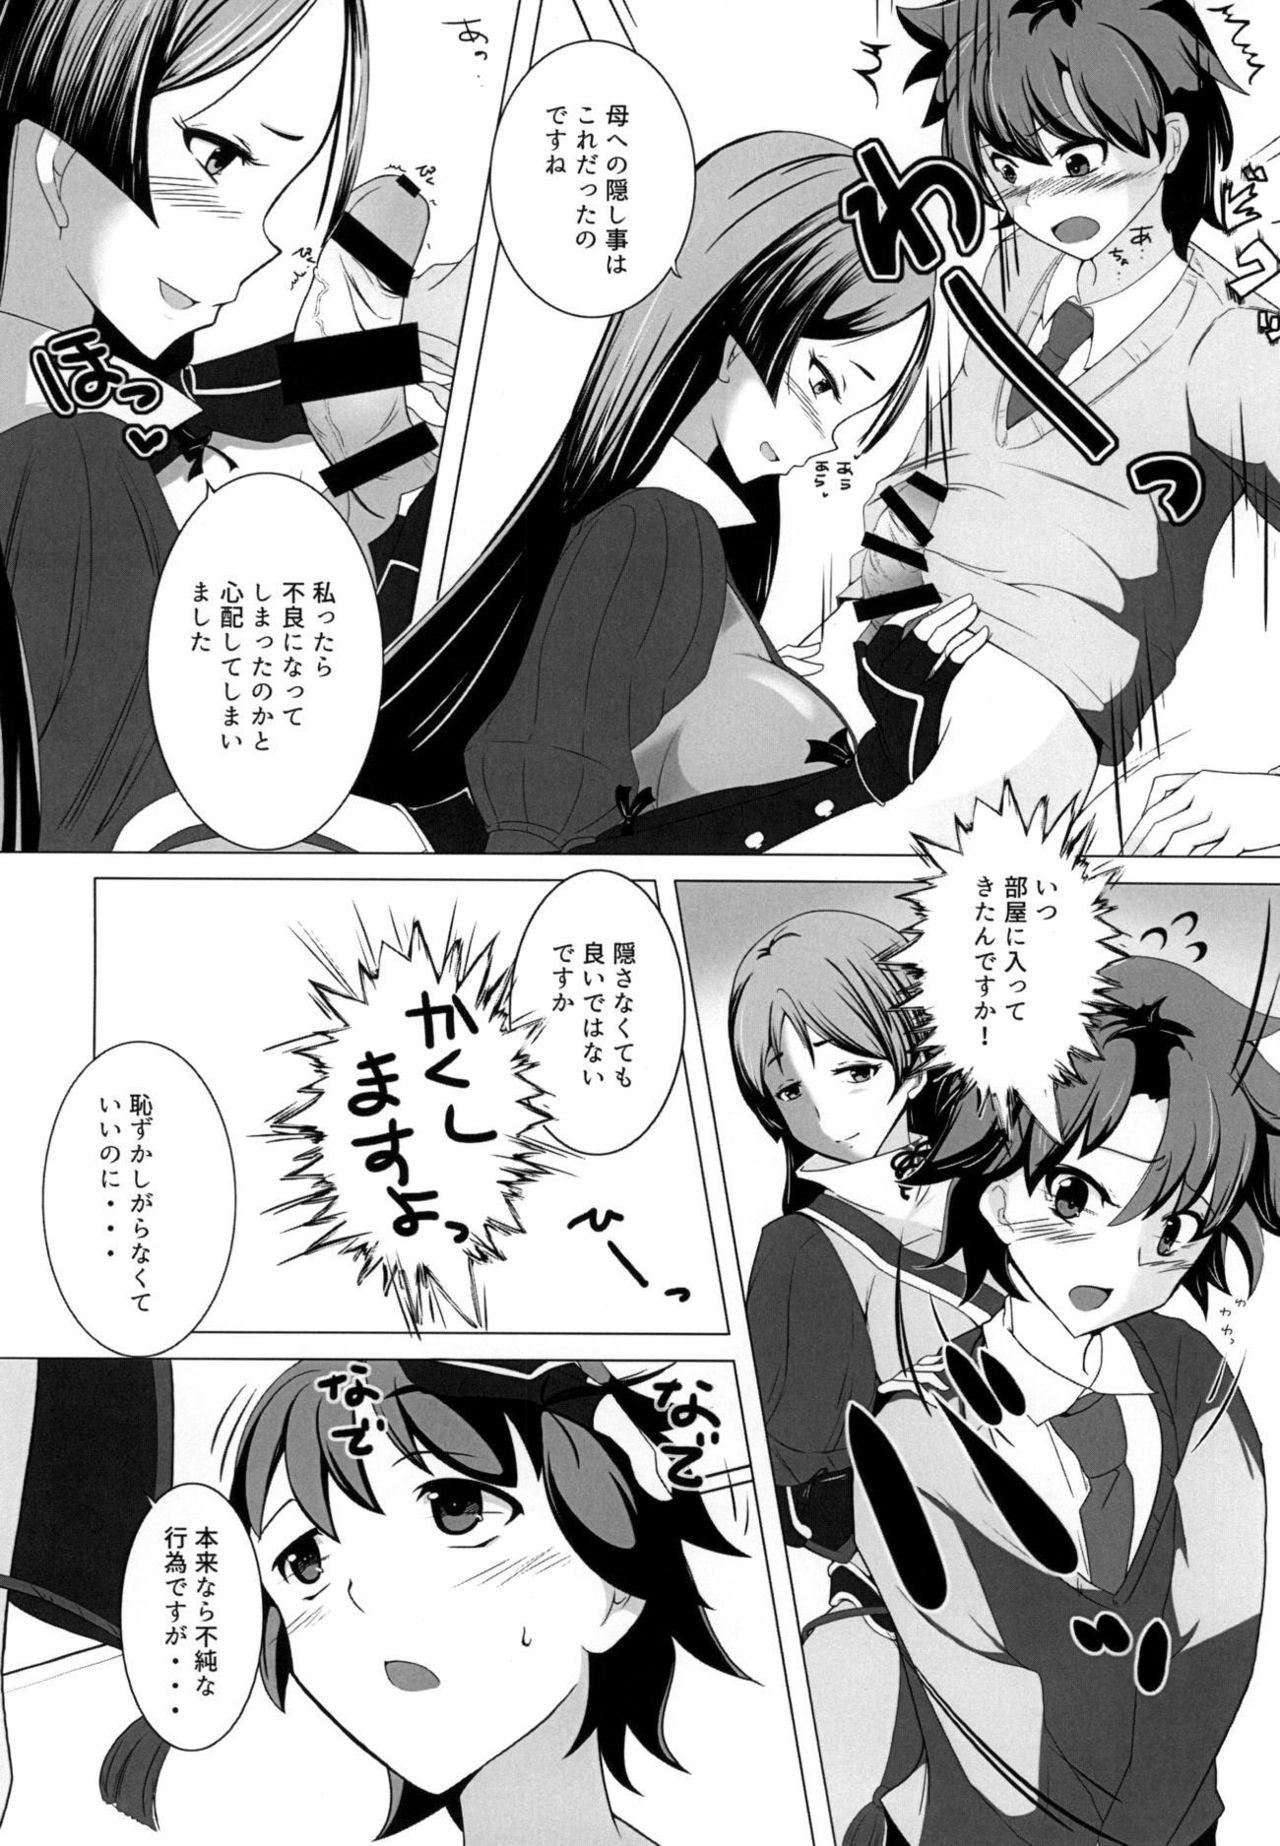 Pounding Shinsei na Hahaue o Kegashite Shimau Manga - Fate grand order Teen Blowjob - Page 7